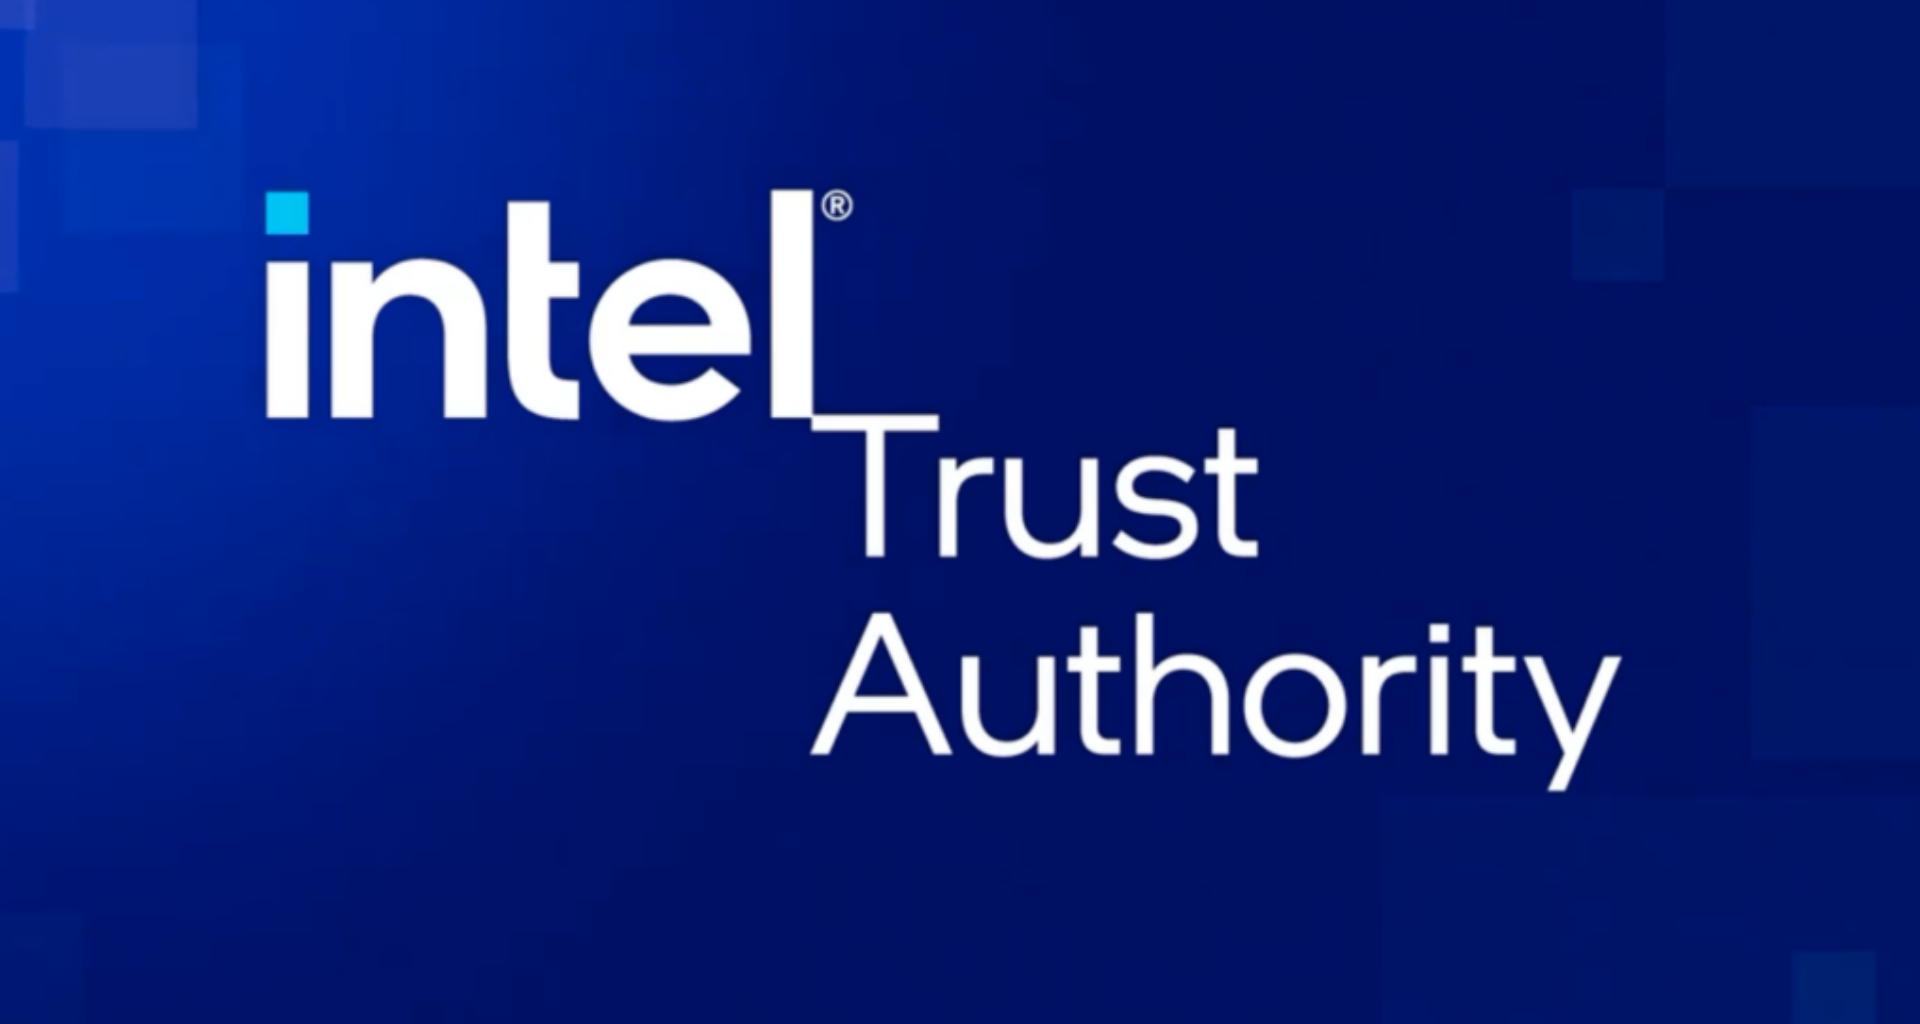 Intel trust authority permitirá maior segurança de dados na nuvem; entenda. Novidade chega com o propósito de uma revisão de segurança assim que um arquivo é enviado para nuvem, por meio de inteligência artificial. Veja detalhes